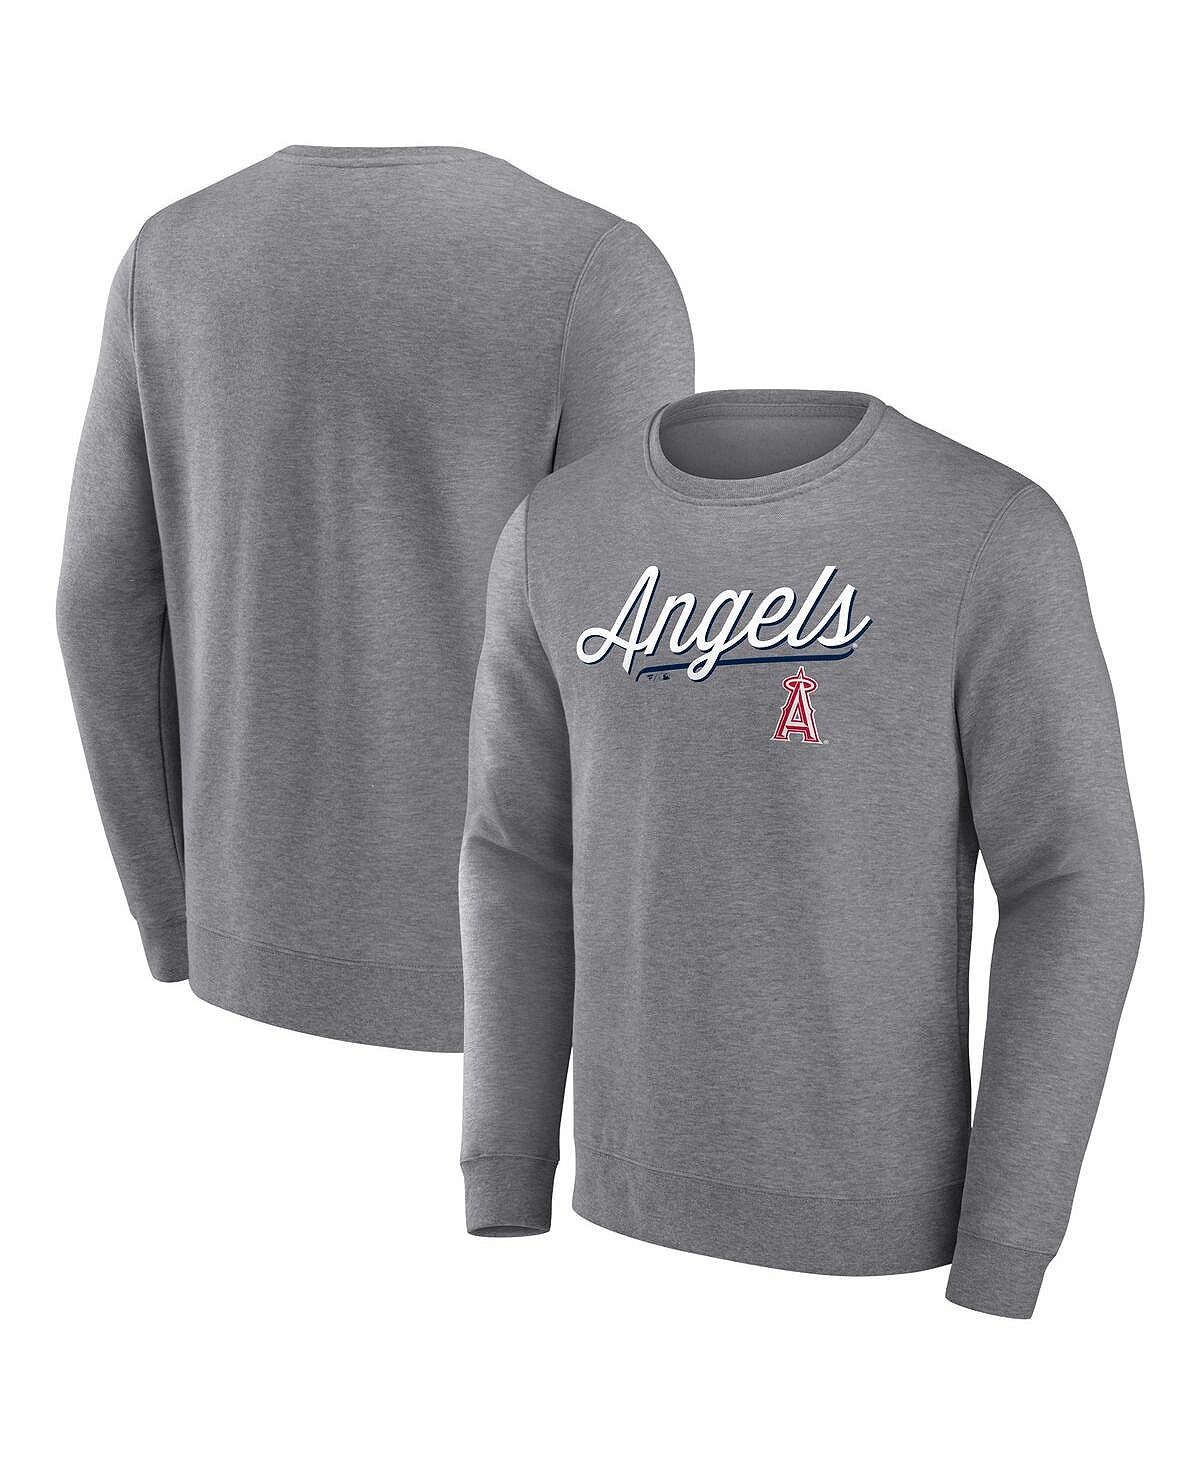 Мужской пуловер с логотипом Heather Grey Los Angeles Angels Simplicity Fanatics